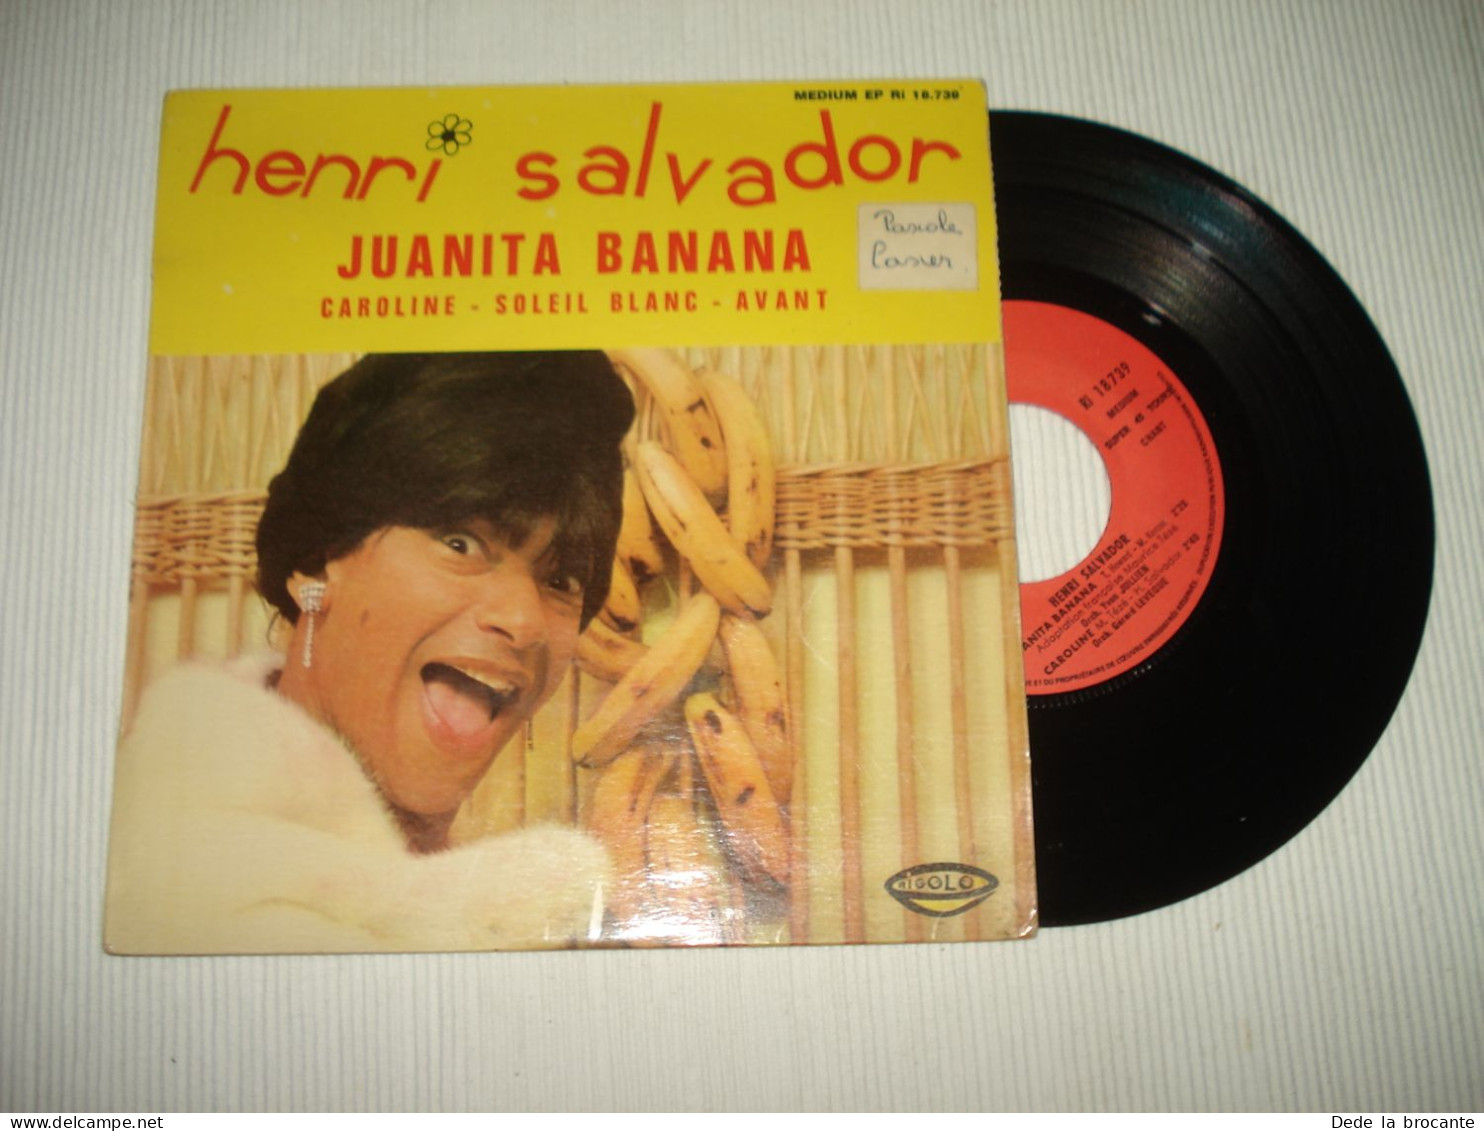 B13 / Henri Salvador – Juanita Banana  - EP  – Ri 18.739 - Fr 1966  EX/EX - Speciale Formaten